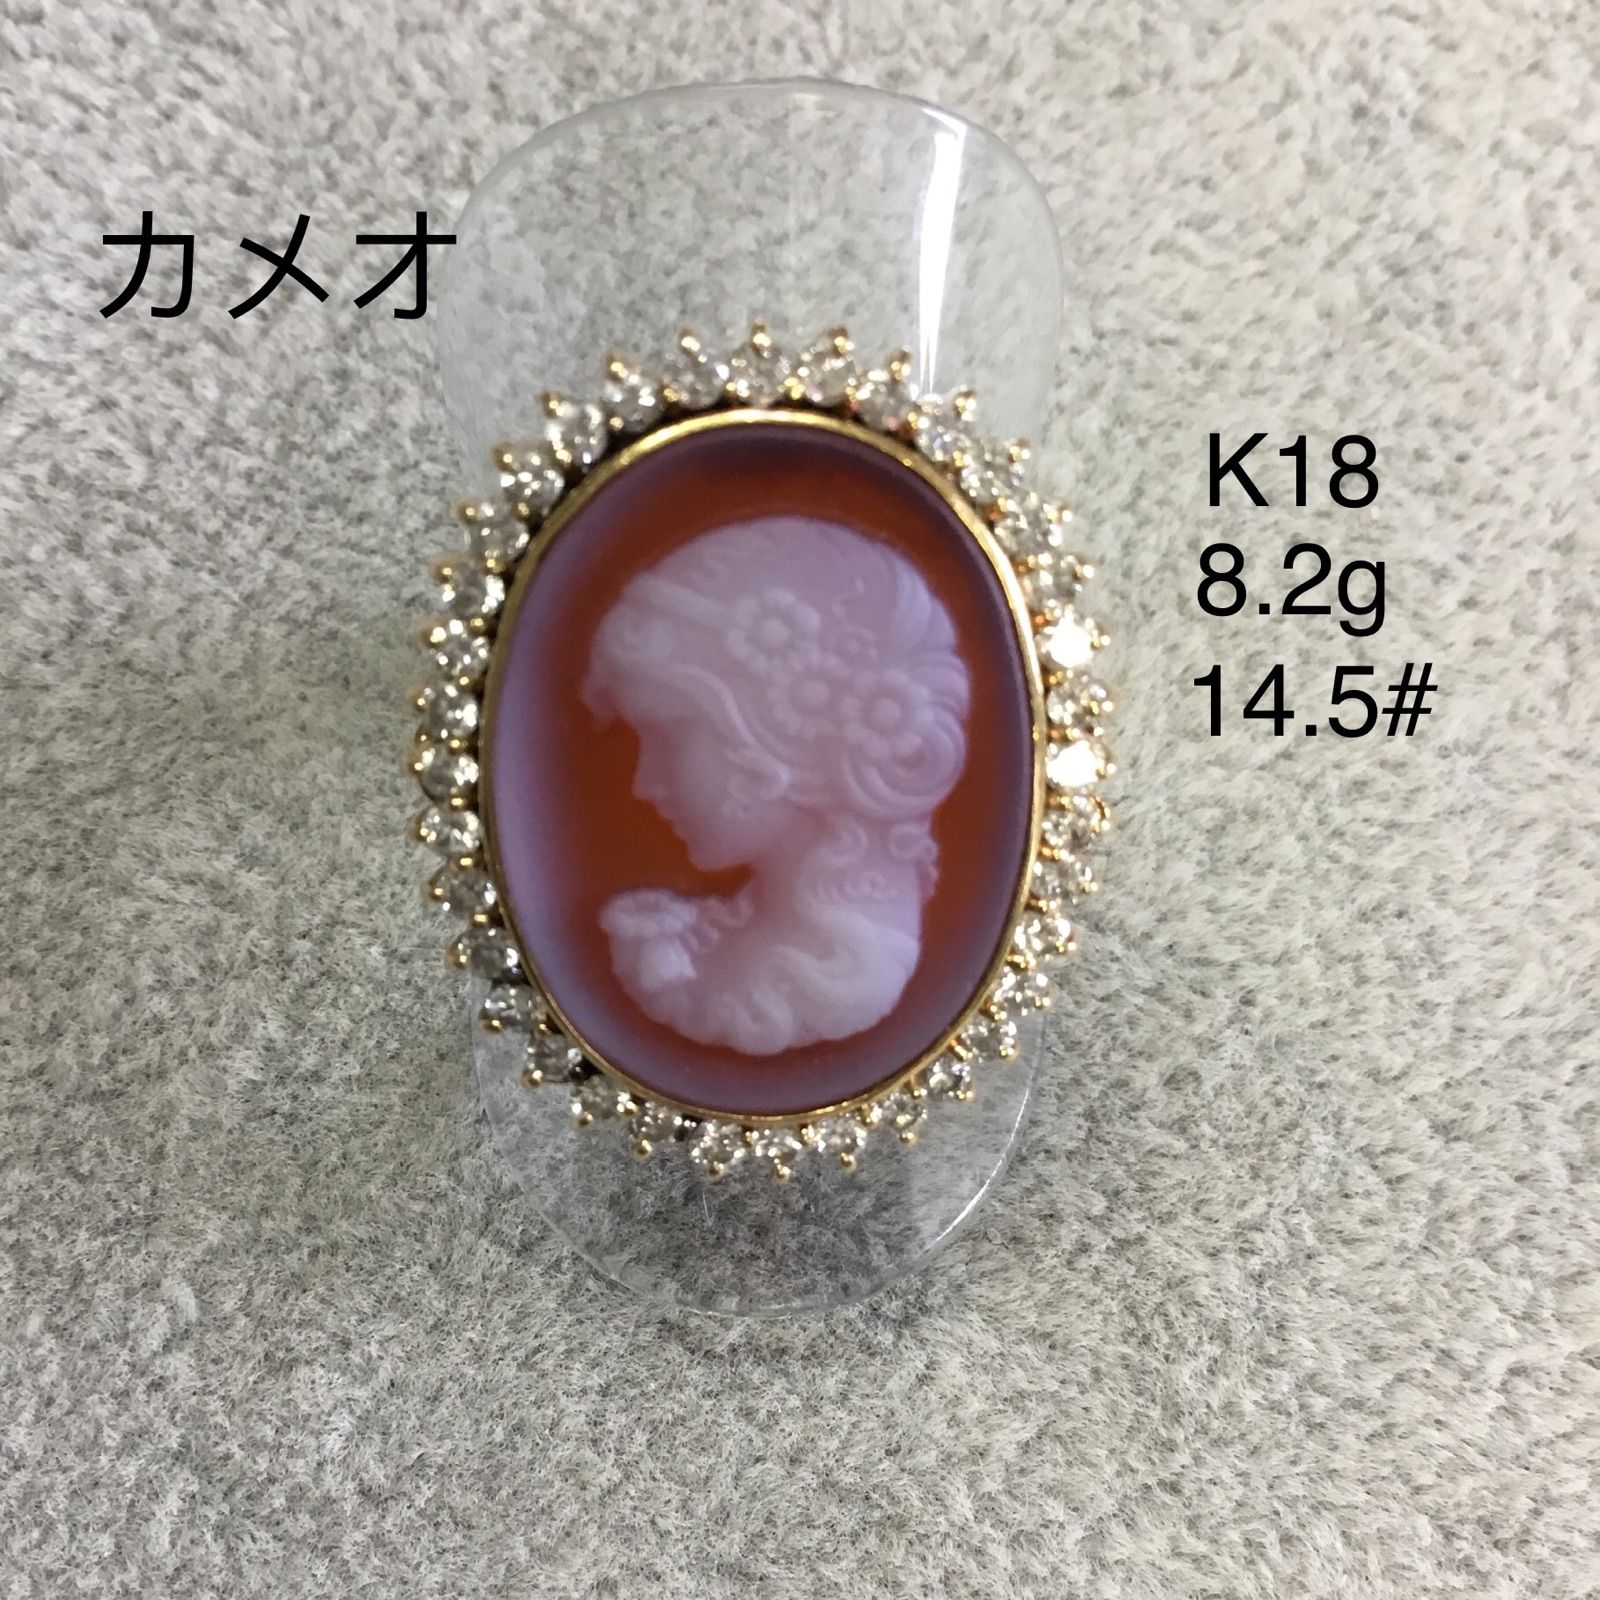 カメオ ダイヤモンド リング K18 - メルカリ